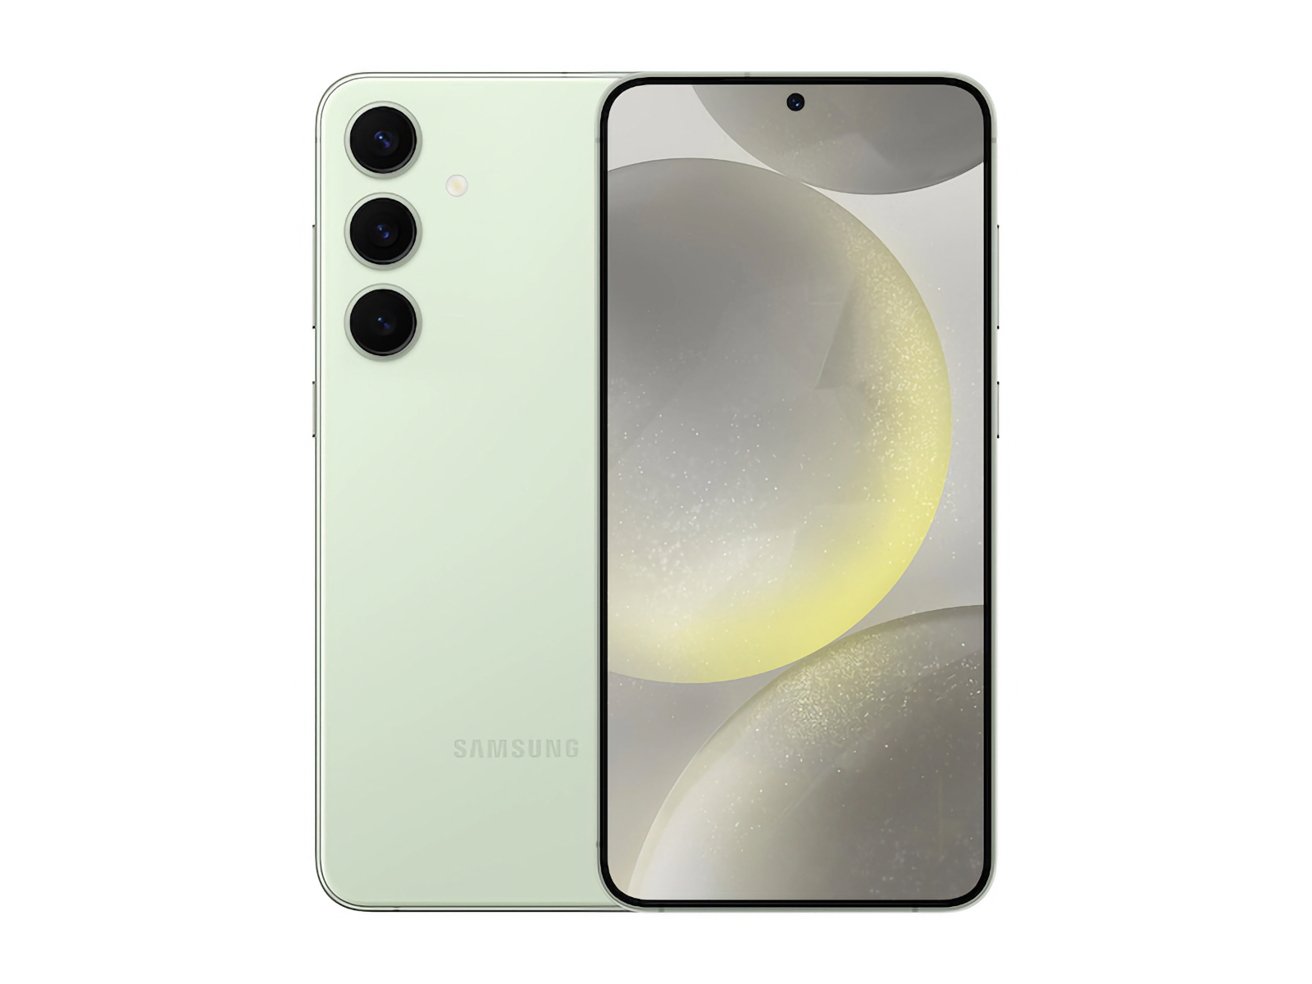 Смартфон Samsung мятно-зеленого цвета с тройной камерой на задней панели и экраном с изображением абстрактных кругов с градиентом от желтого к серому.